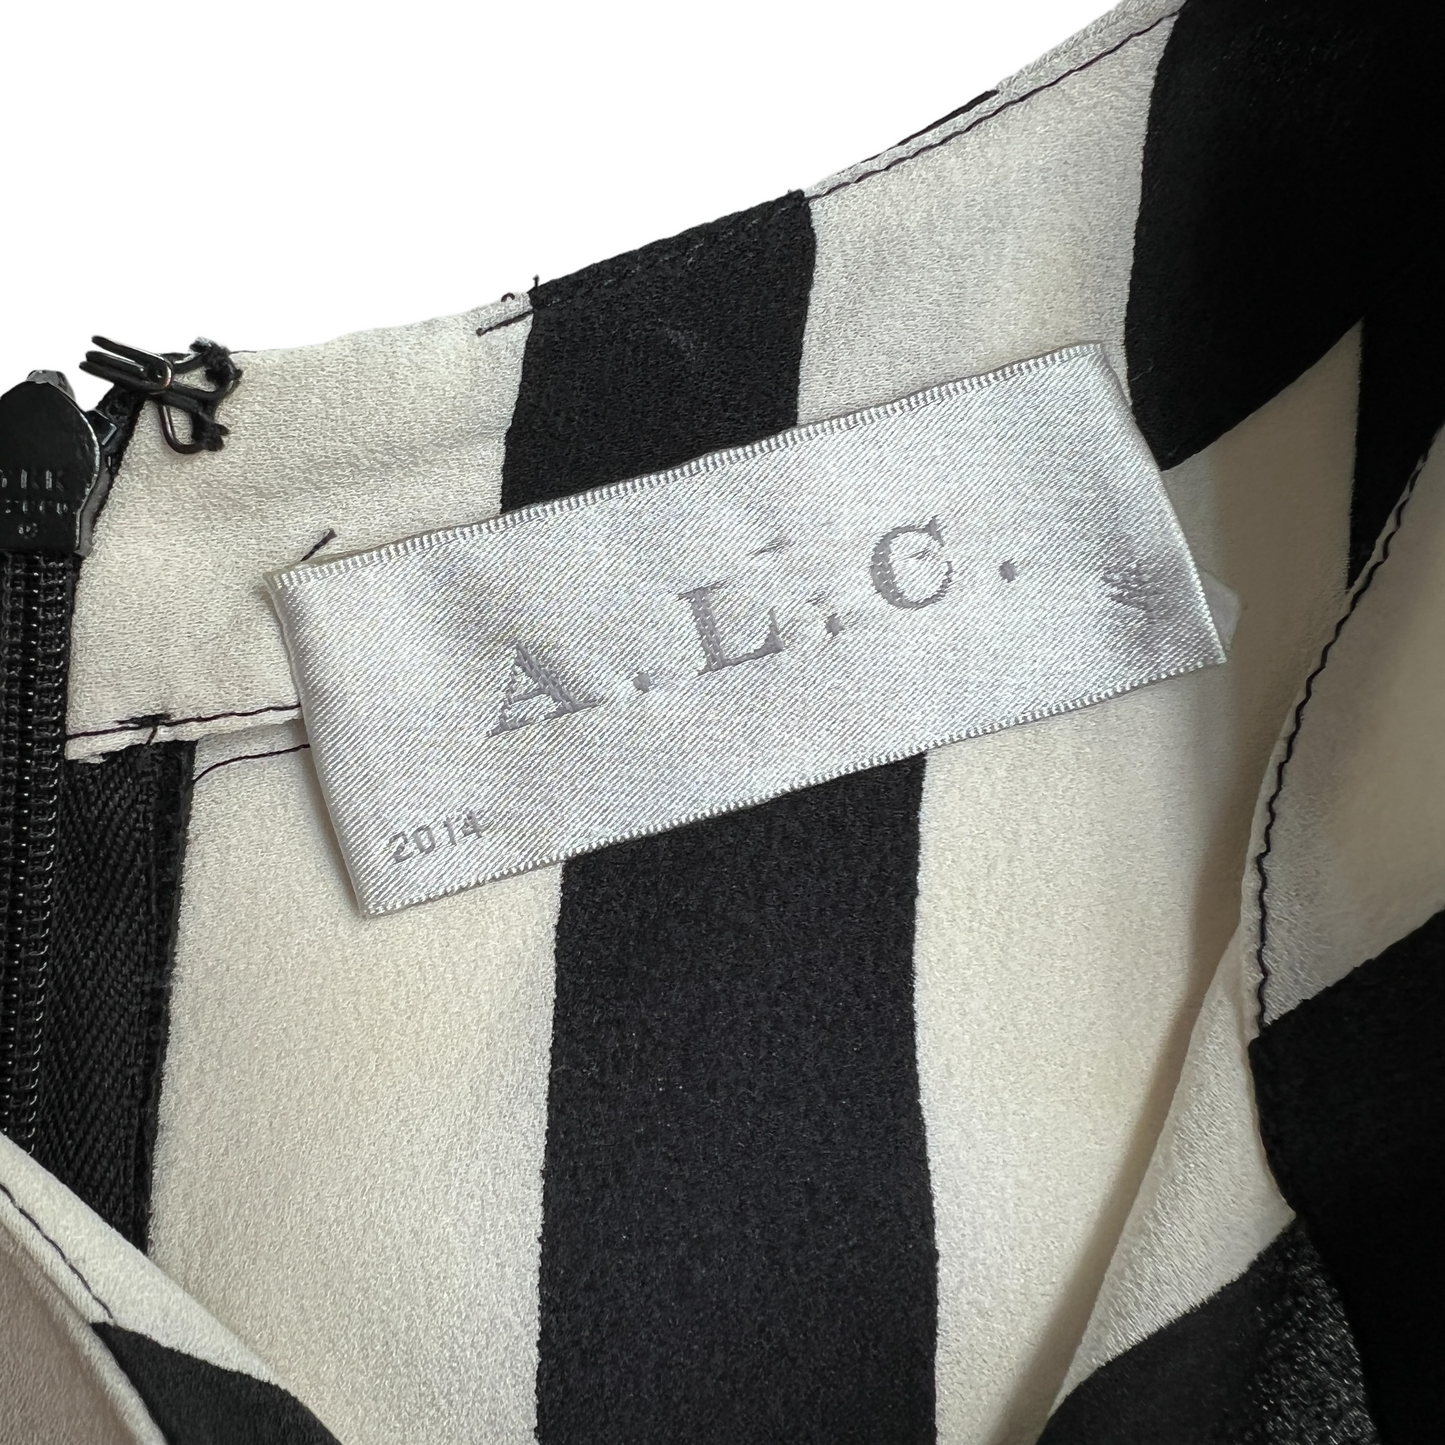 Black & White Striped Silk Blouse - XS